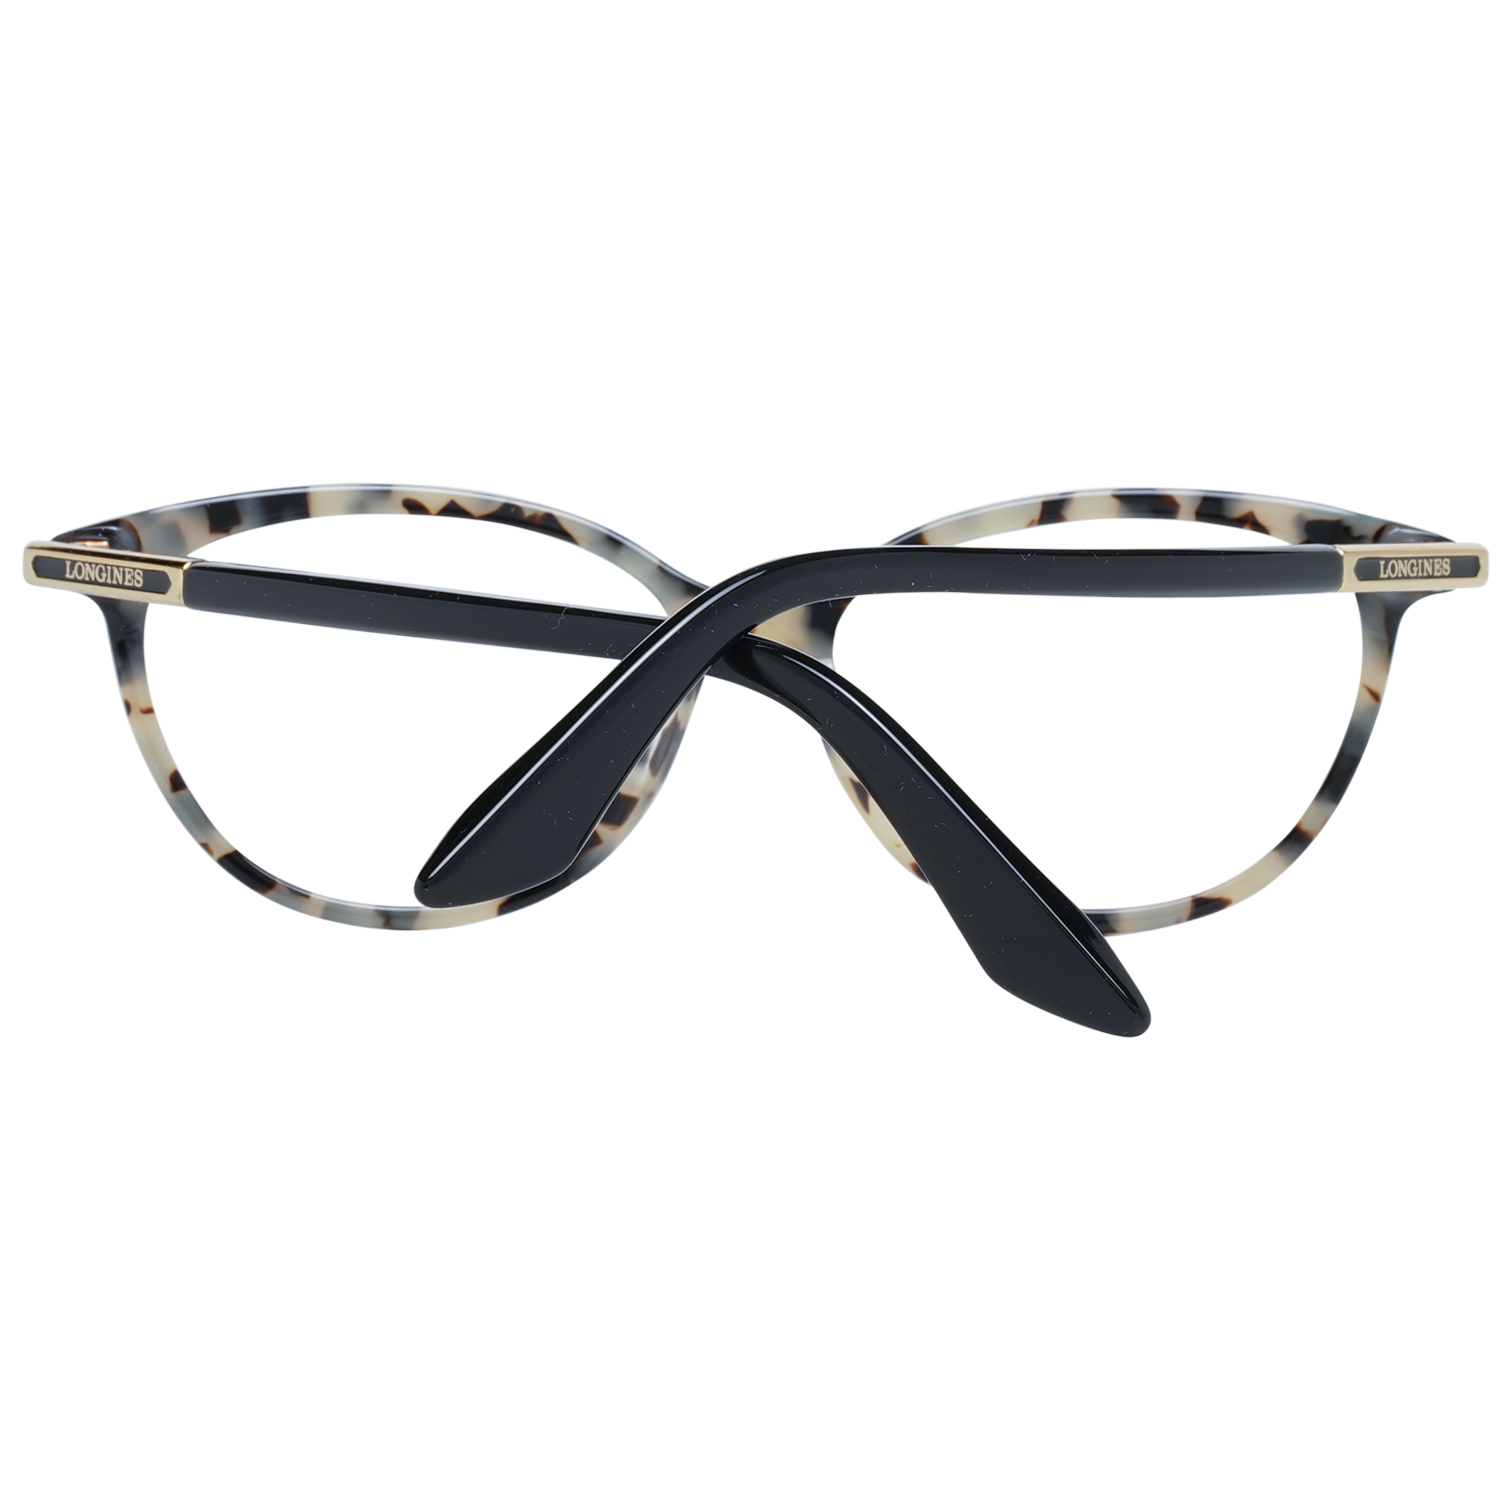 Longines Frames Longines Optical Frame LG5013-H 056 54 Eyeglasses Eyewear UK USA Australia 